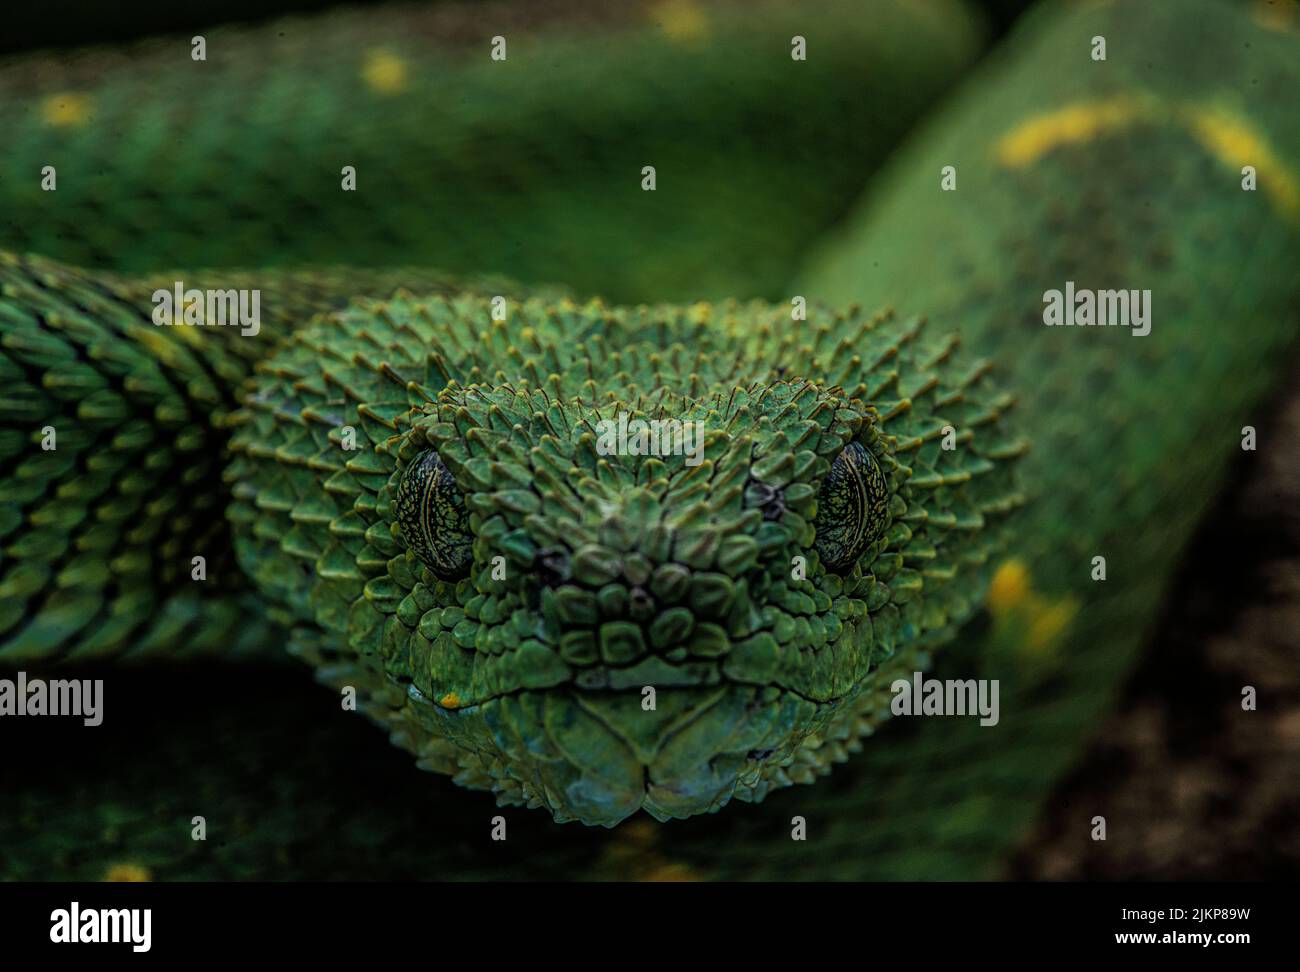 Nahaufnahme einer grünen Viper-Schlange, isoliert auf einem verschwommenen Hintergrund Stockfoto